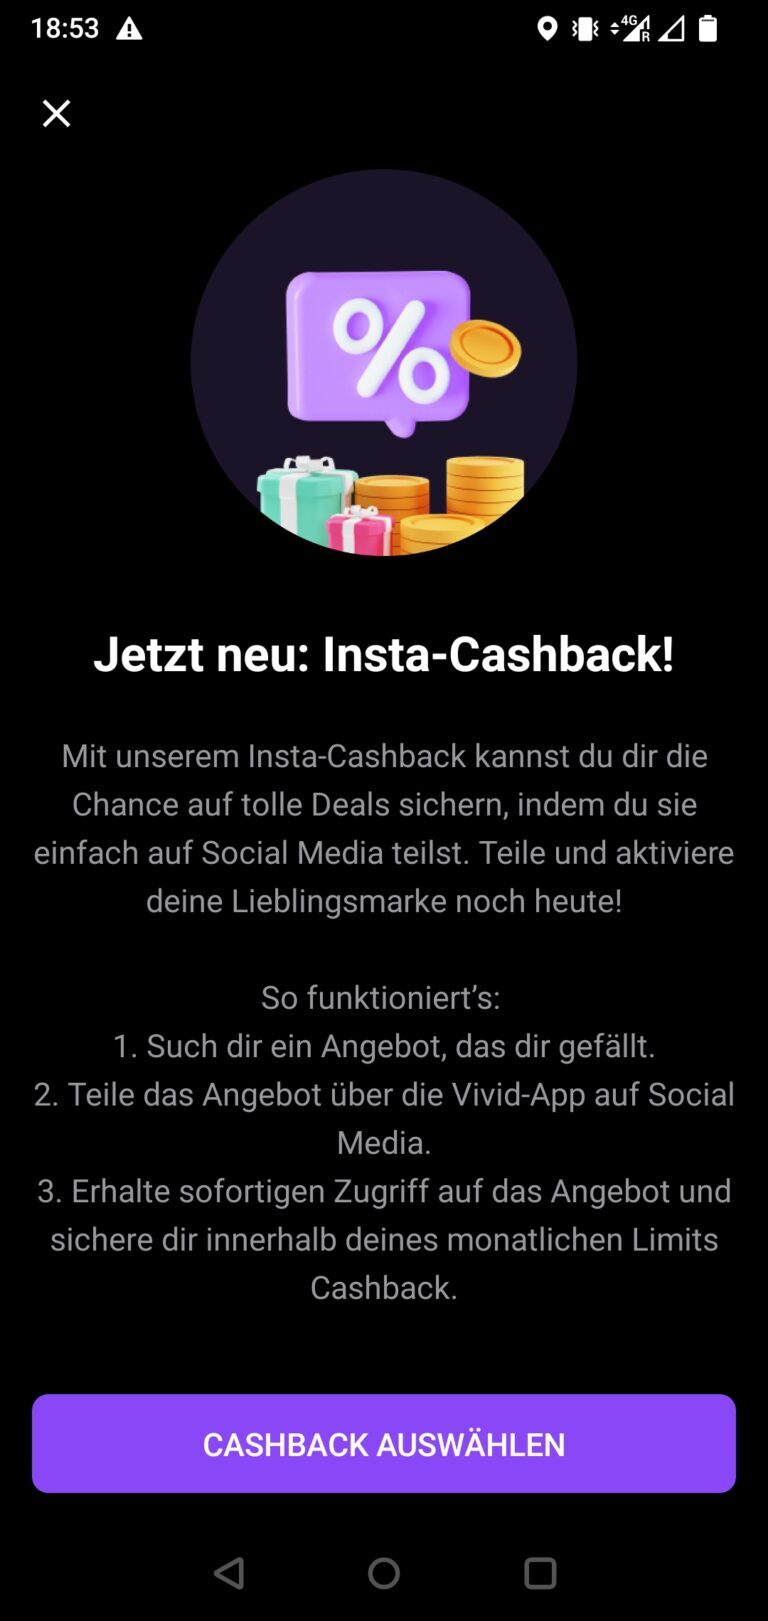 „Insta-Cashback“ - so funktioniert es (Erklärung aus der App)